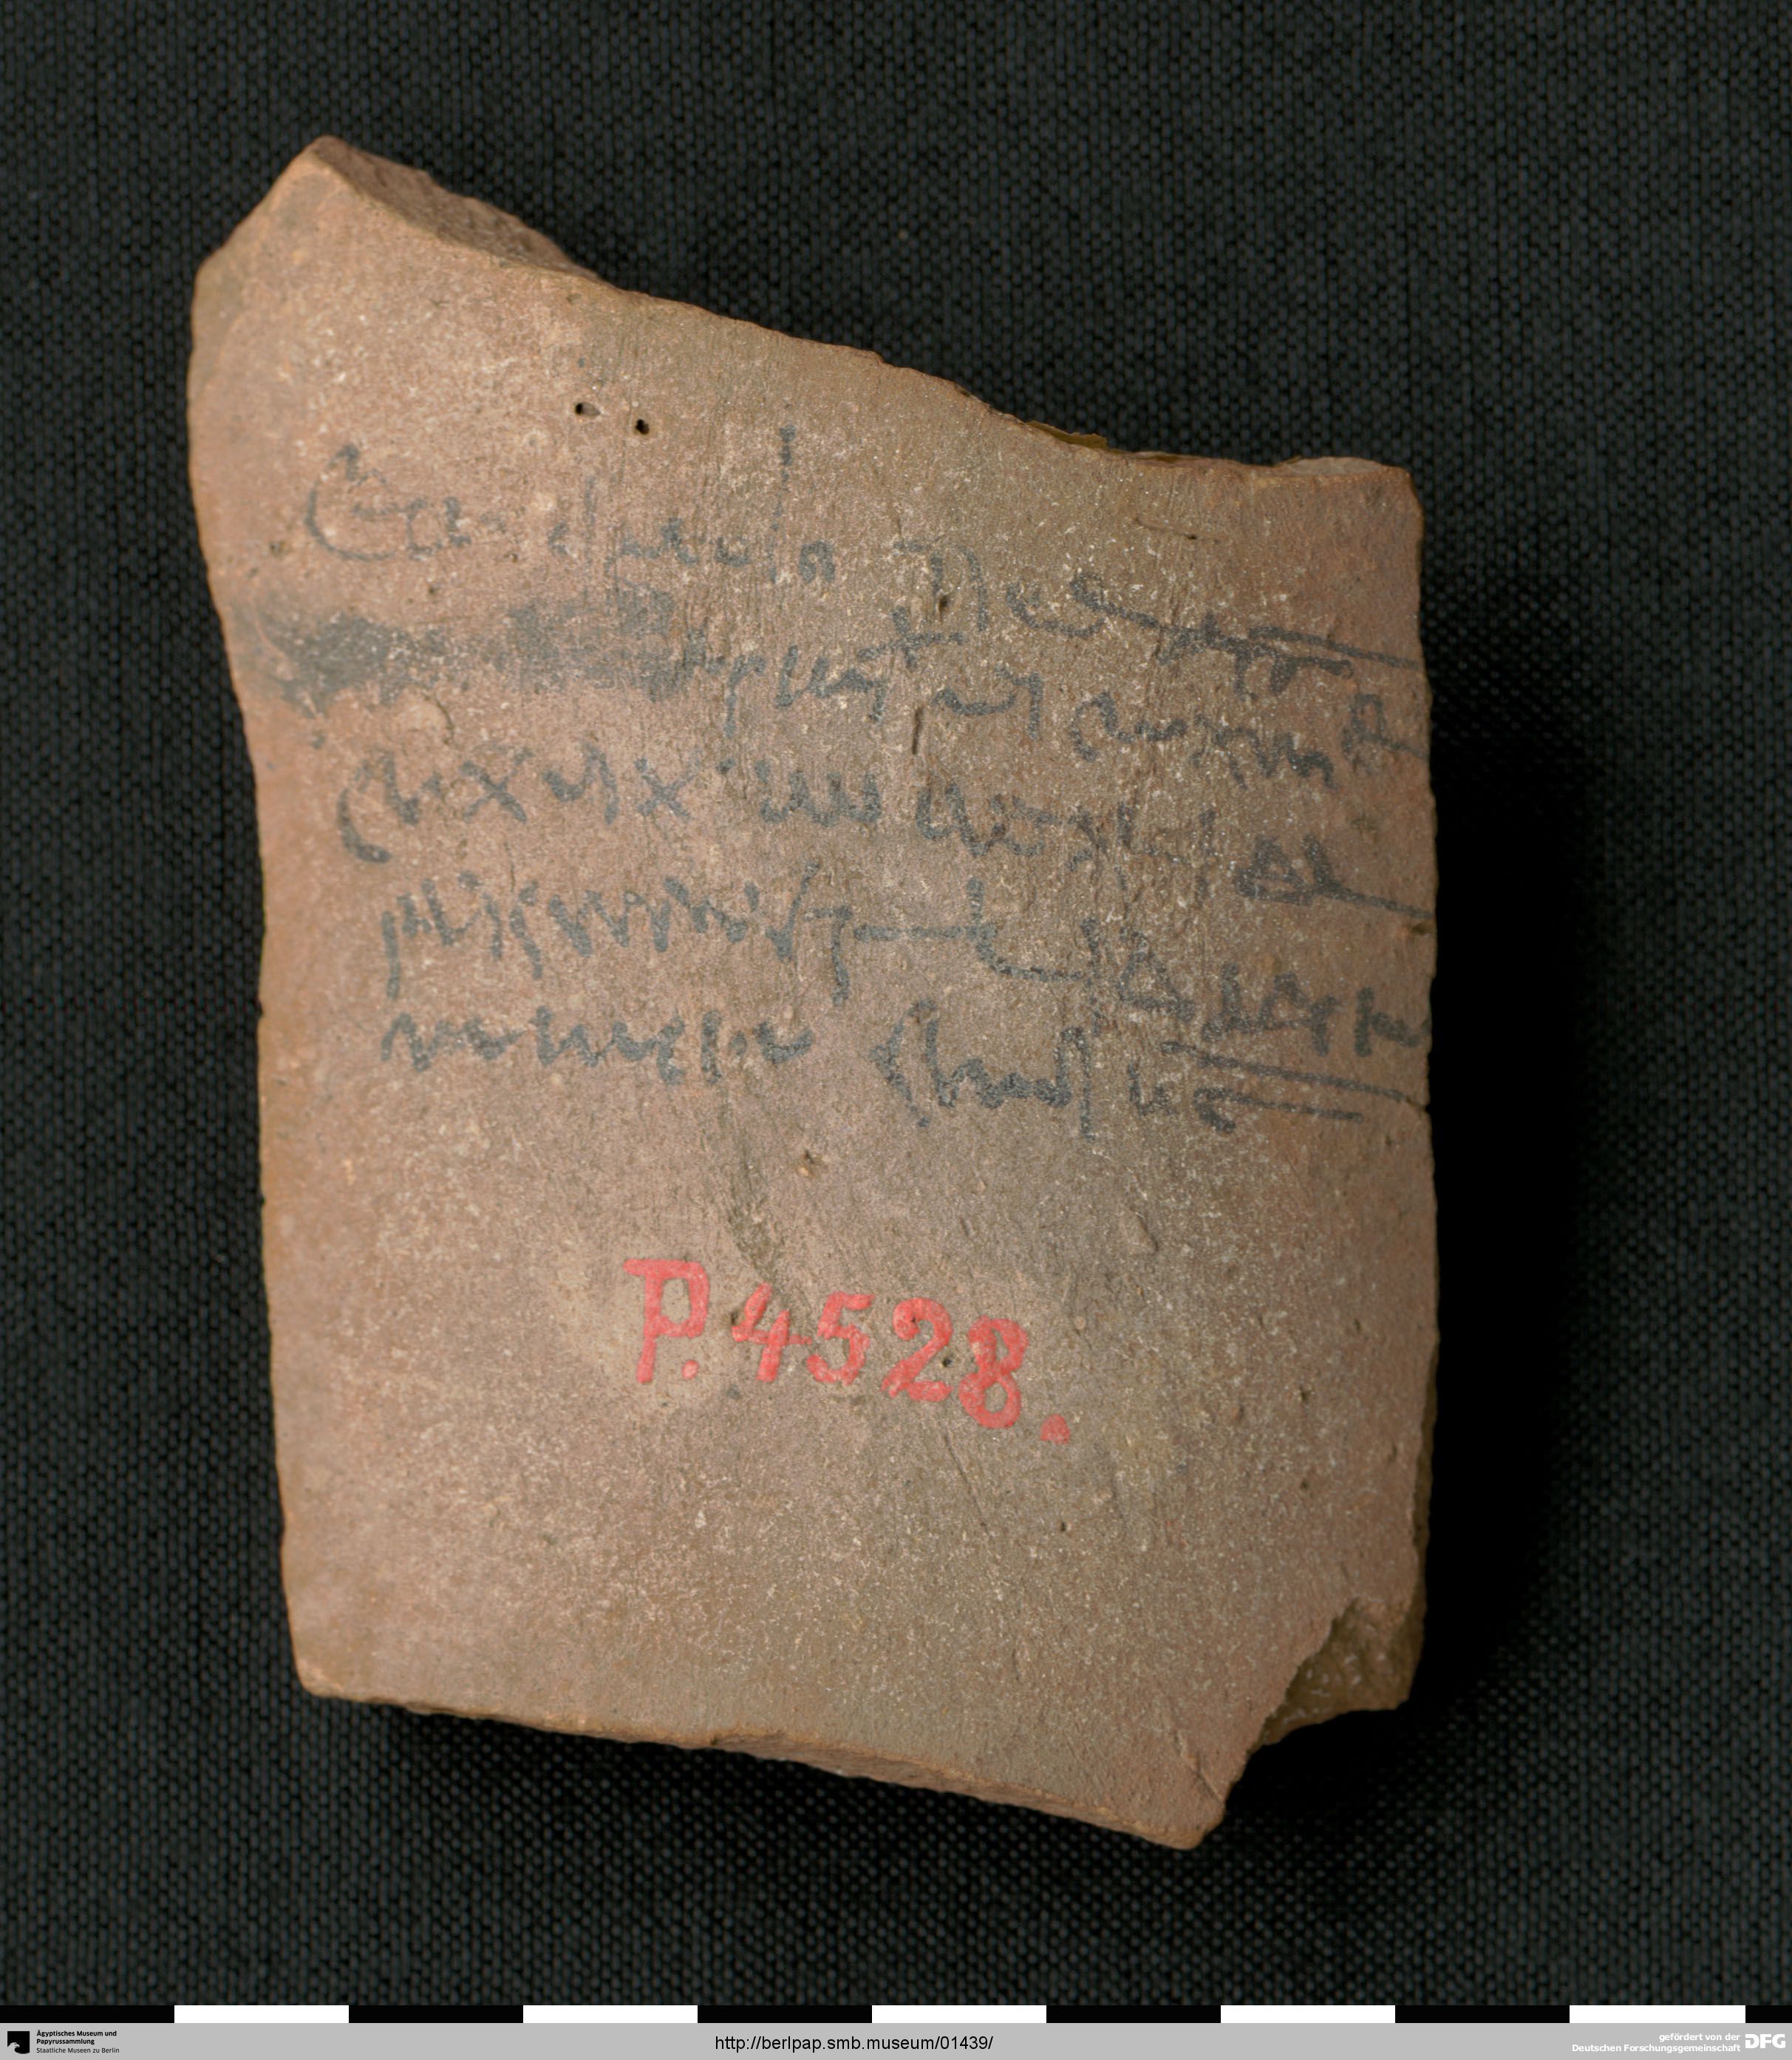 https://berlpap.smb.museum/Original/P_04528_S1_001.jpg (Ägyptisches Museum und Papyrussammlung, Staatliche Museen zu Berlin CC BY-NC-SA)